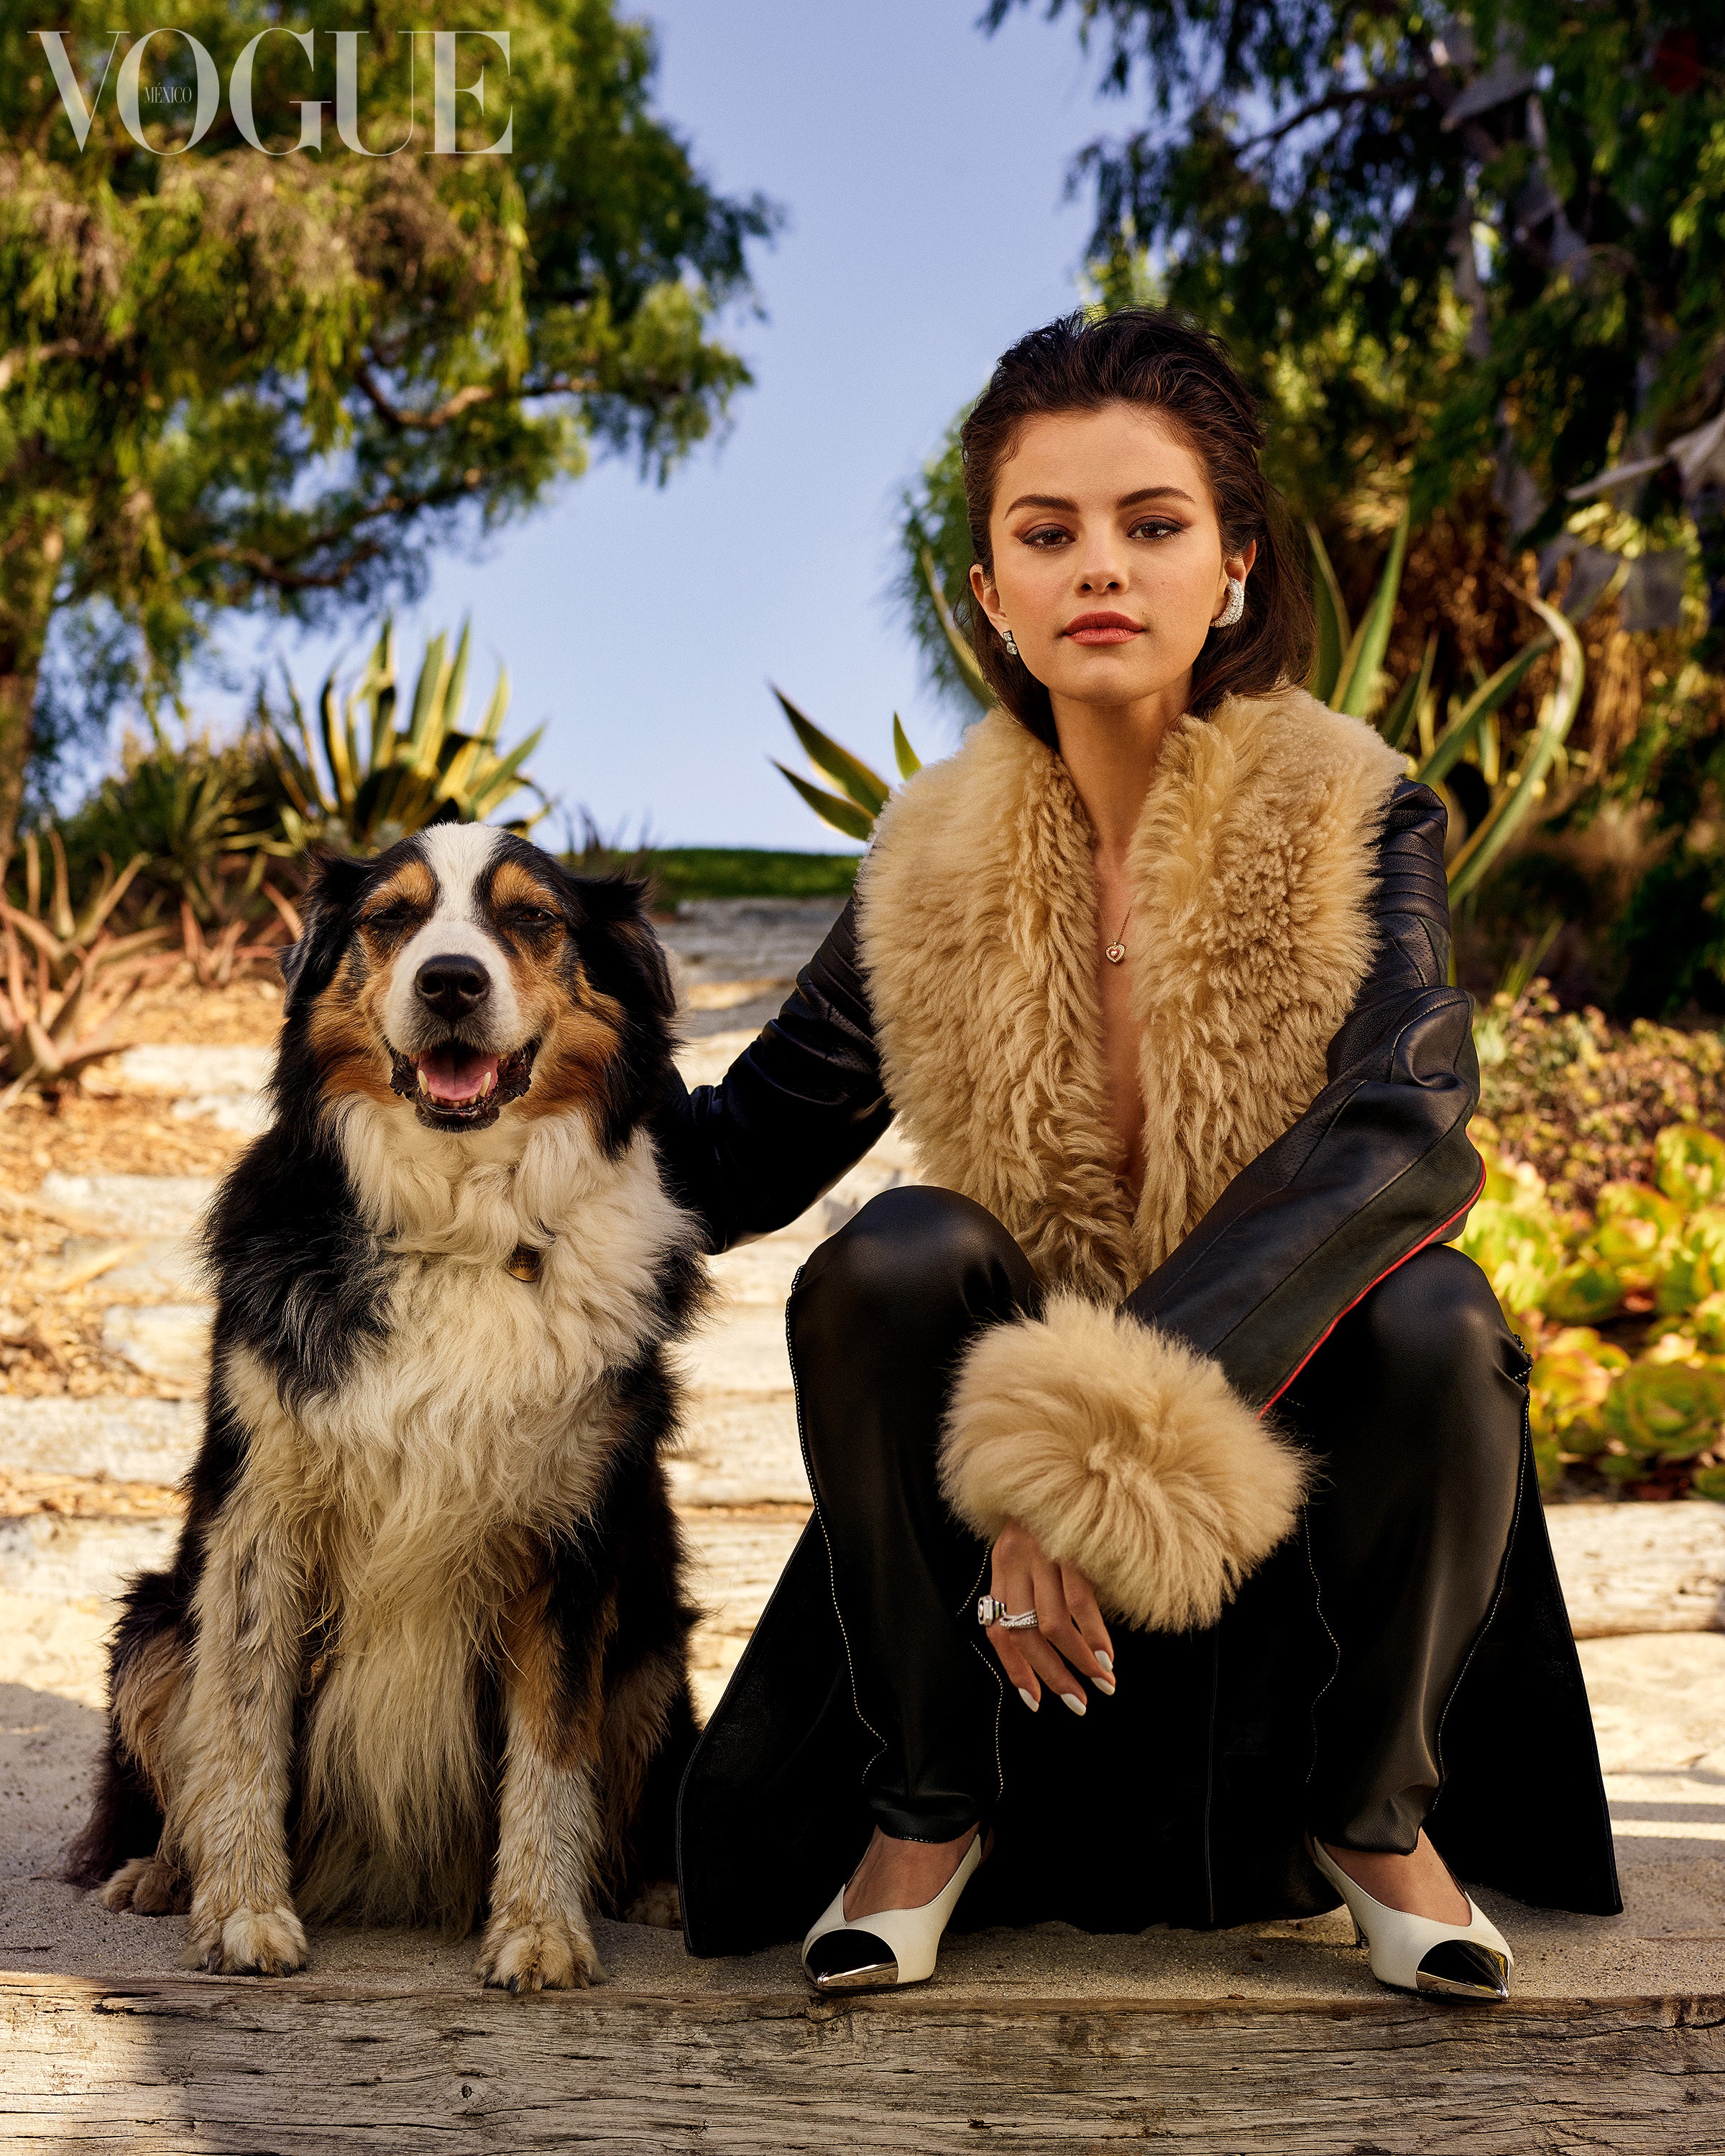 PHOTOS Selena Gomez au Mexique avec un chien!